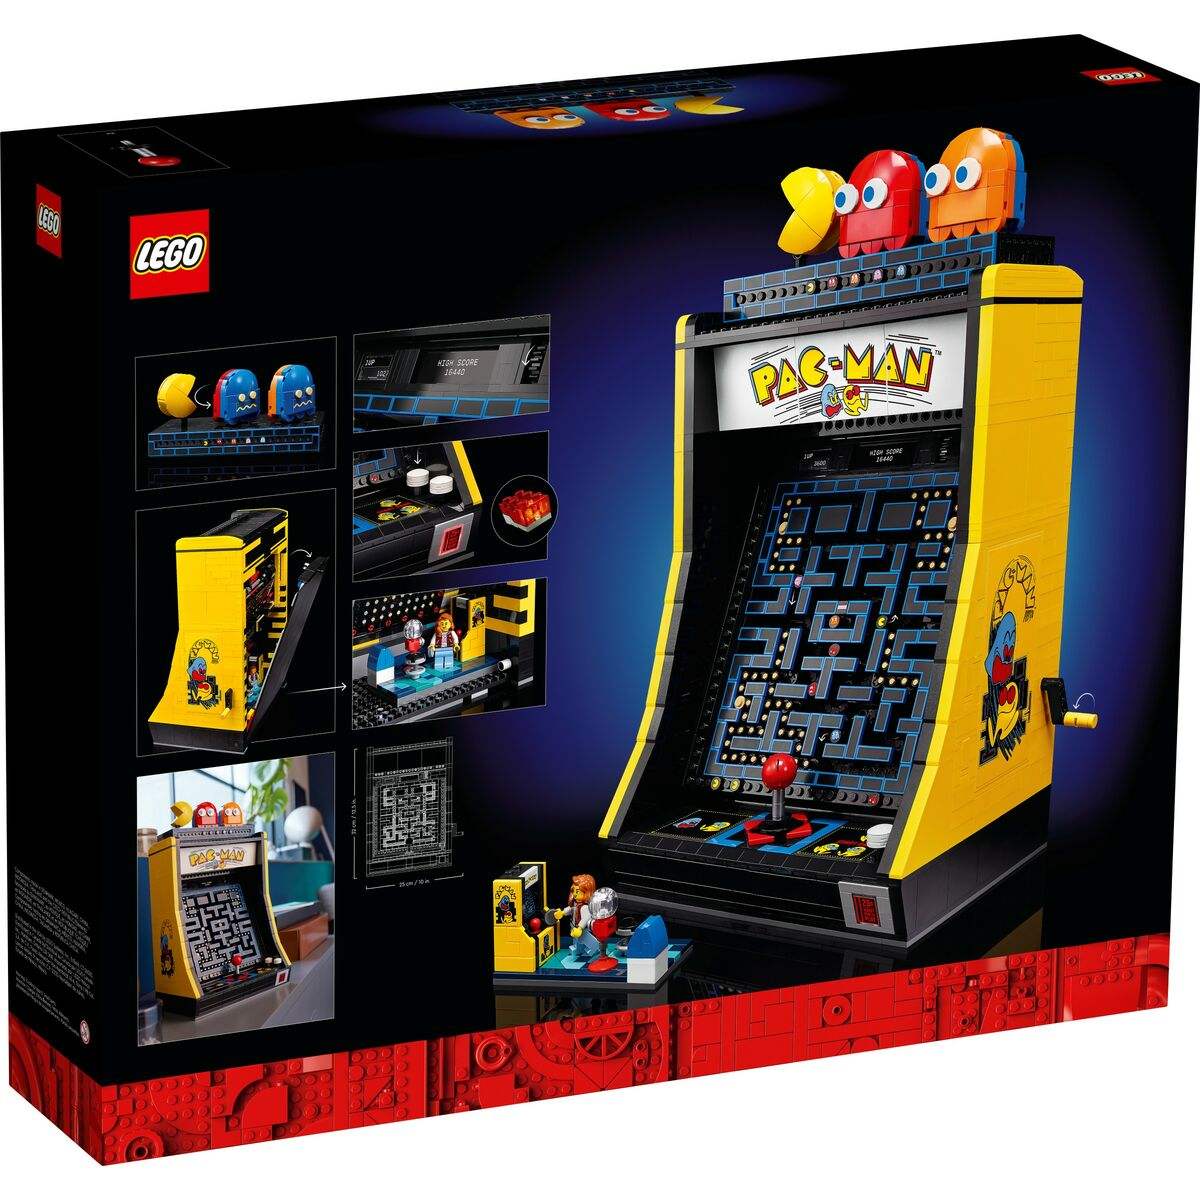 Set de construction Lego Icons Pac-Man 10323 2651 Pièces